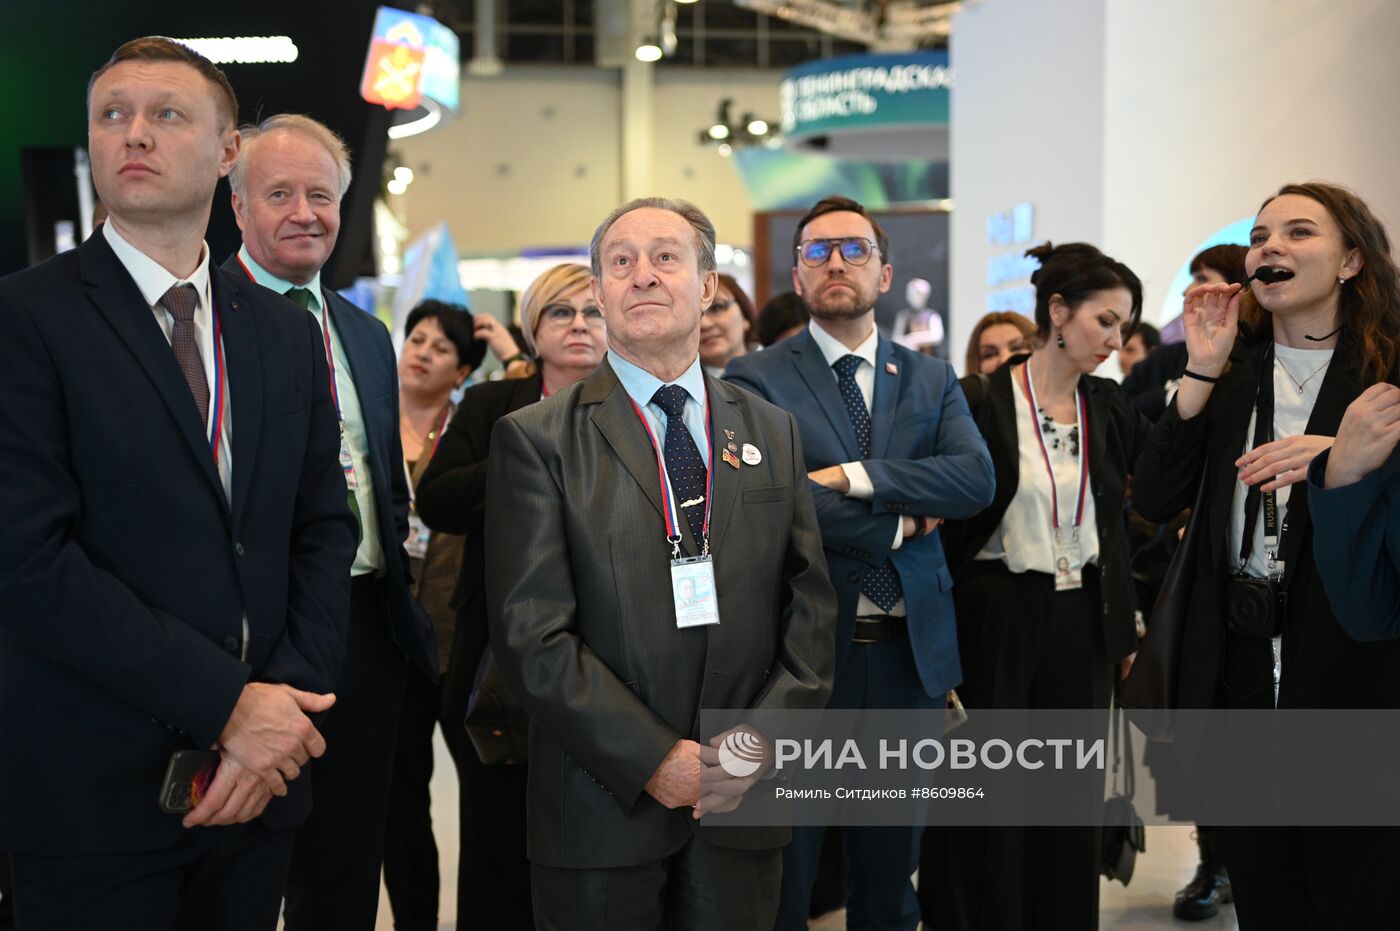 Выставка "Россия". Визит делегации доверенных лиц В. Путина